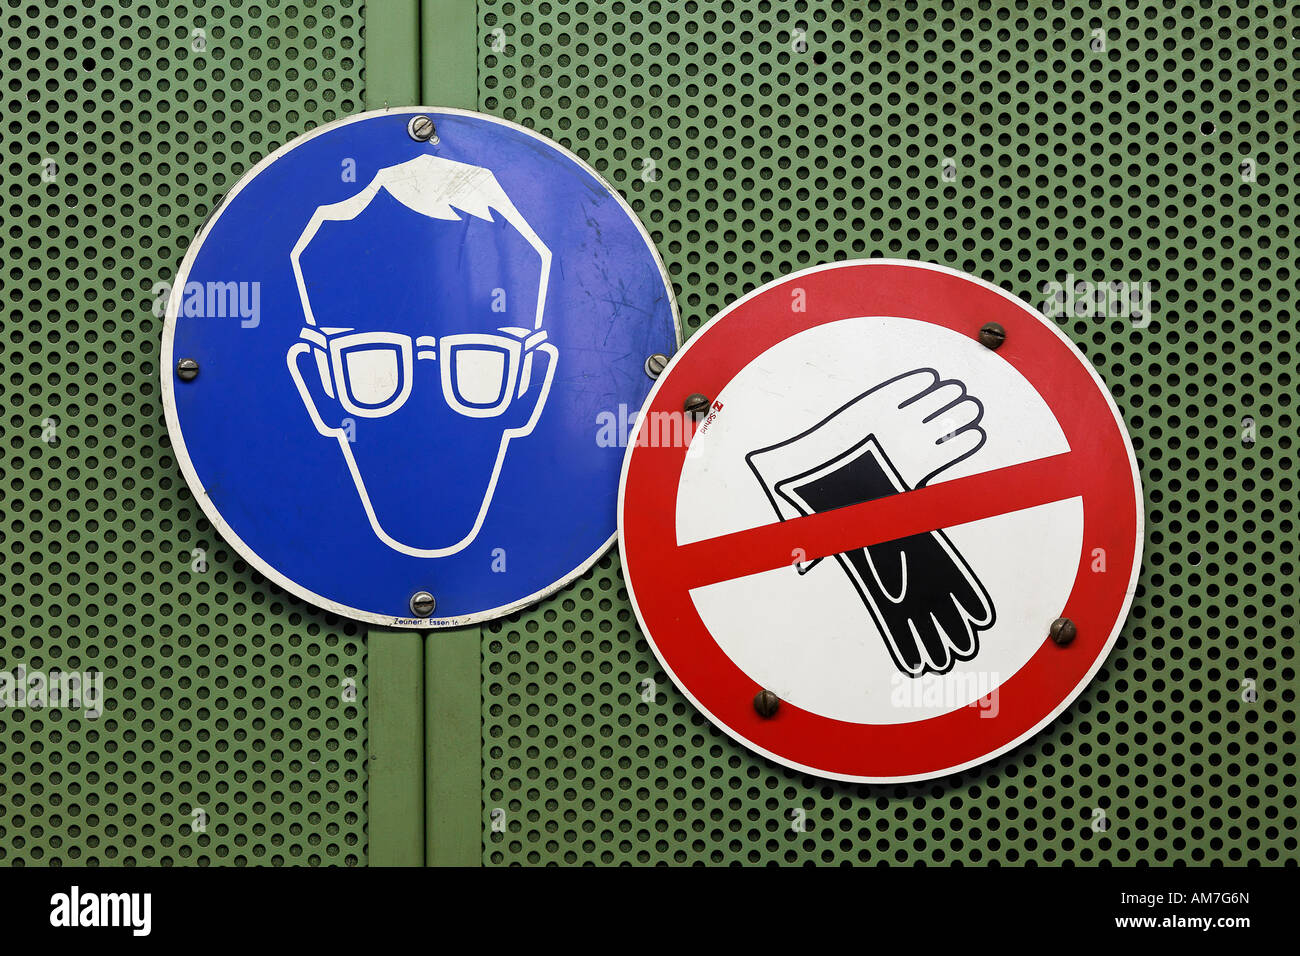 Artículo firmar gafas de seguridad, guantes de trabajo ningún signo de peligro, Alemania Foto de stock